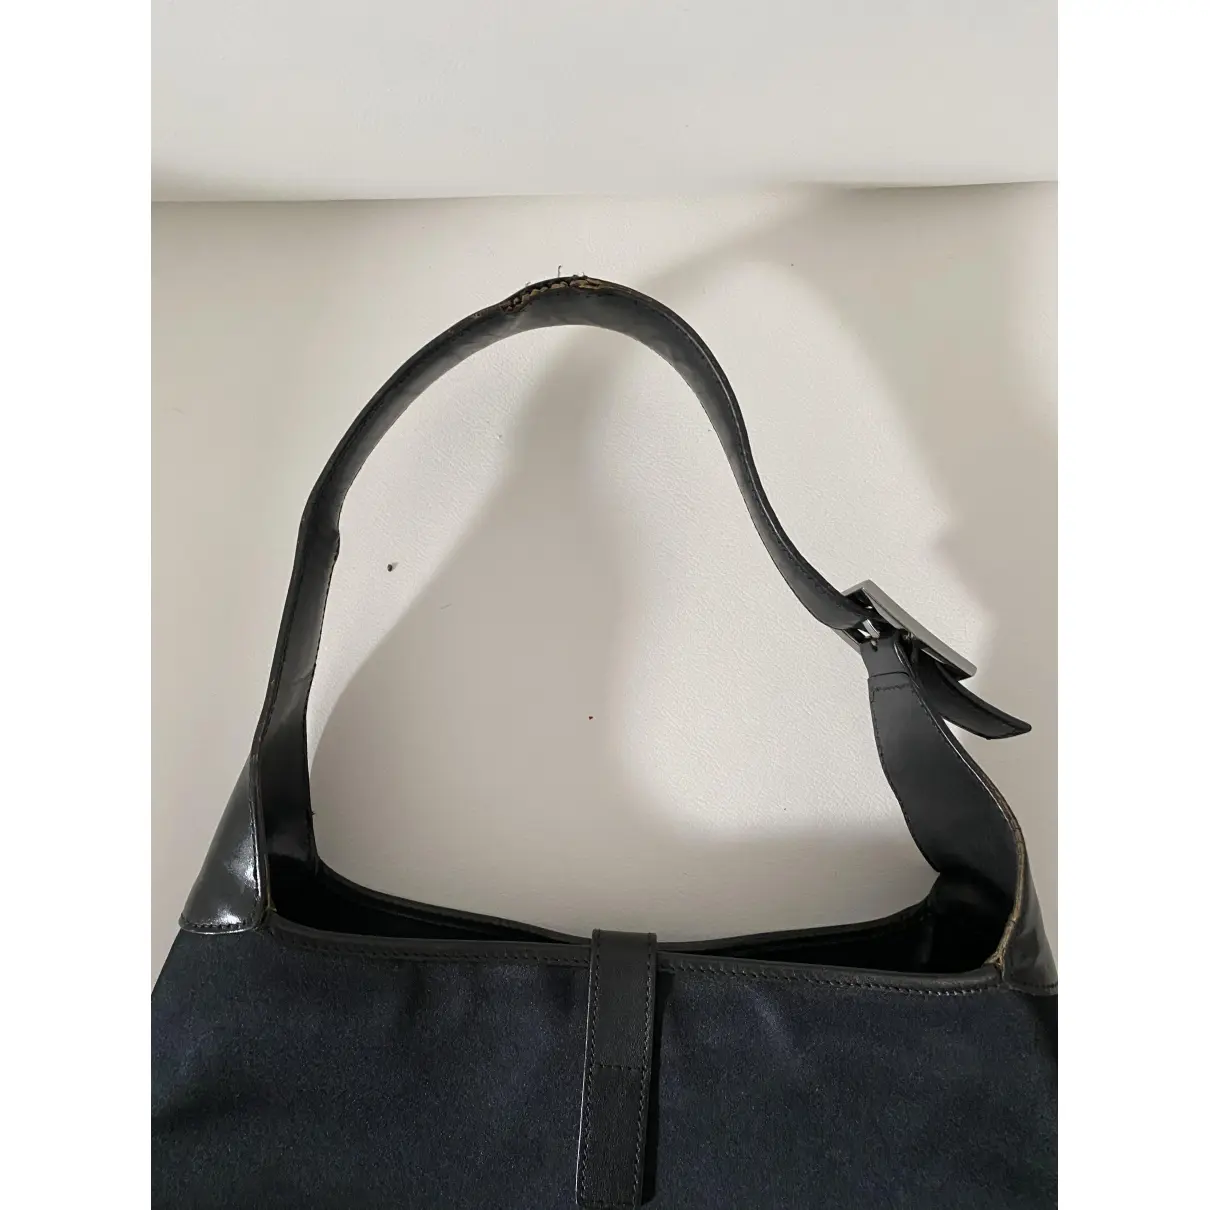 Buy Gucci Jackie Vintage  cloth handbag online - Vintage